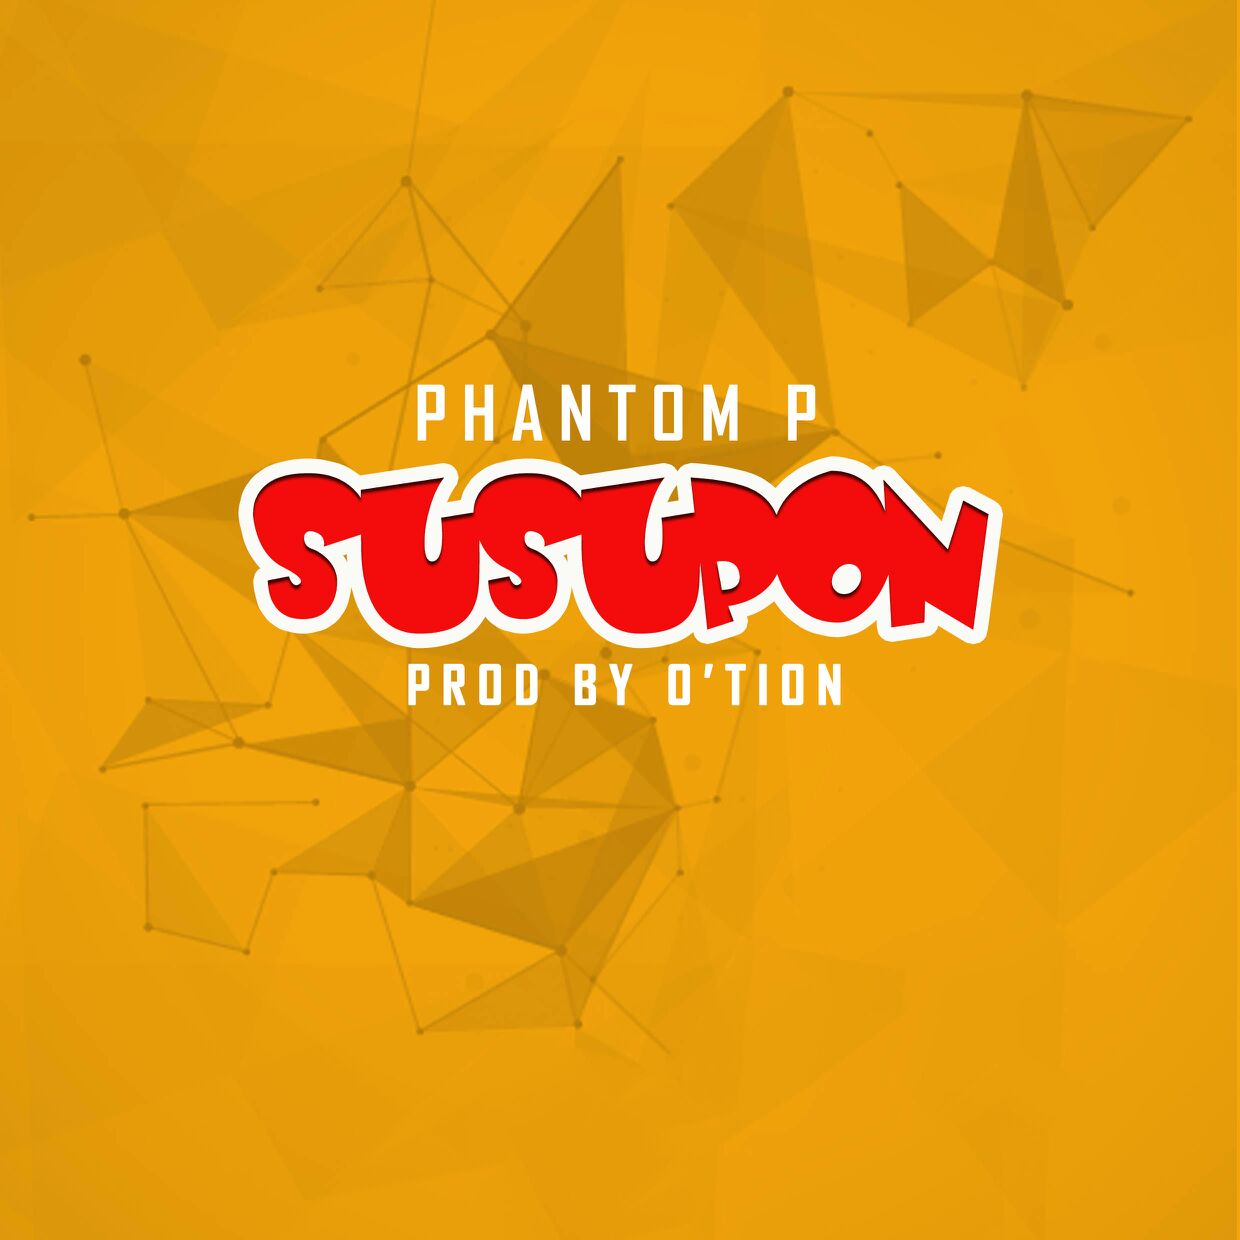 Phantom P – Susupon (Prod By O’tion)